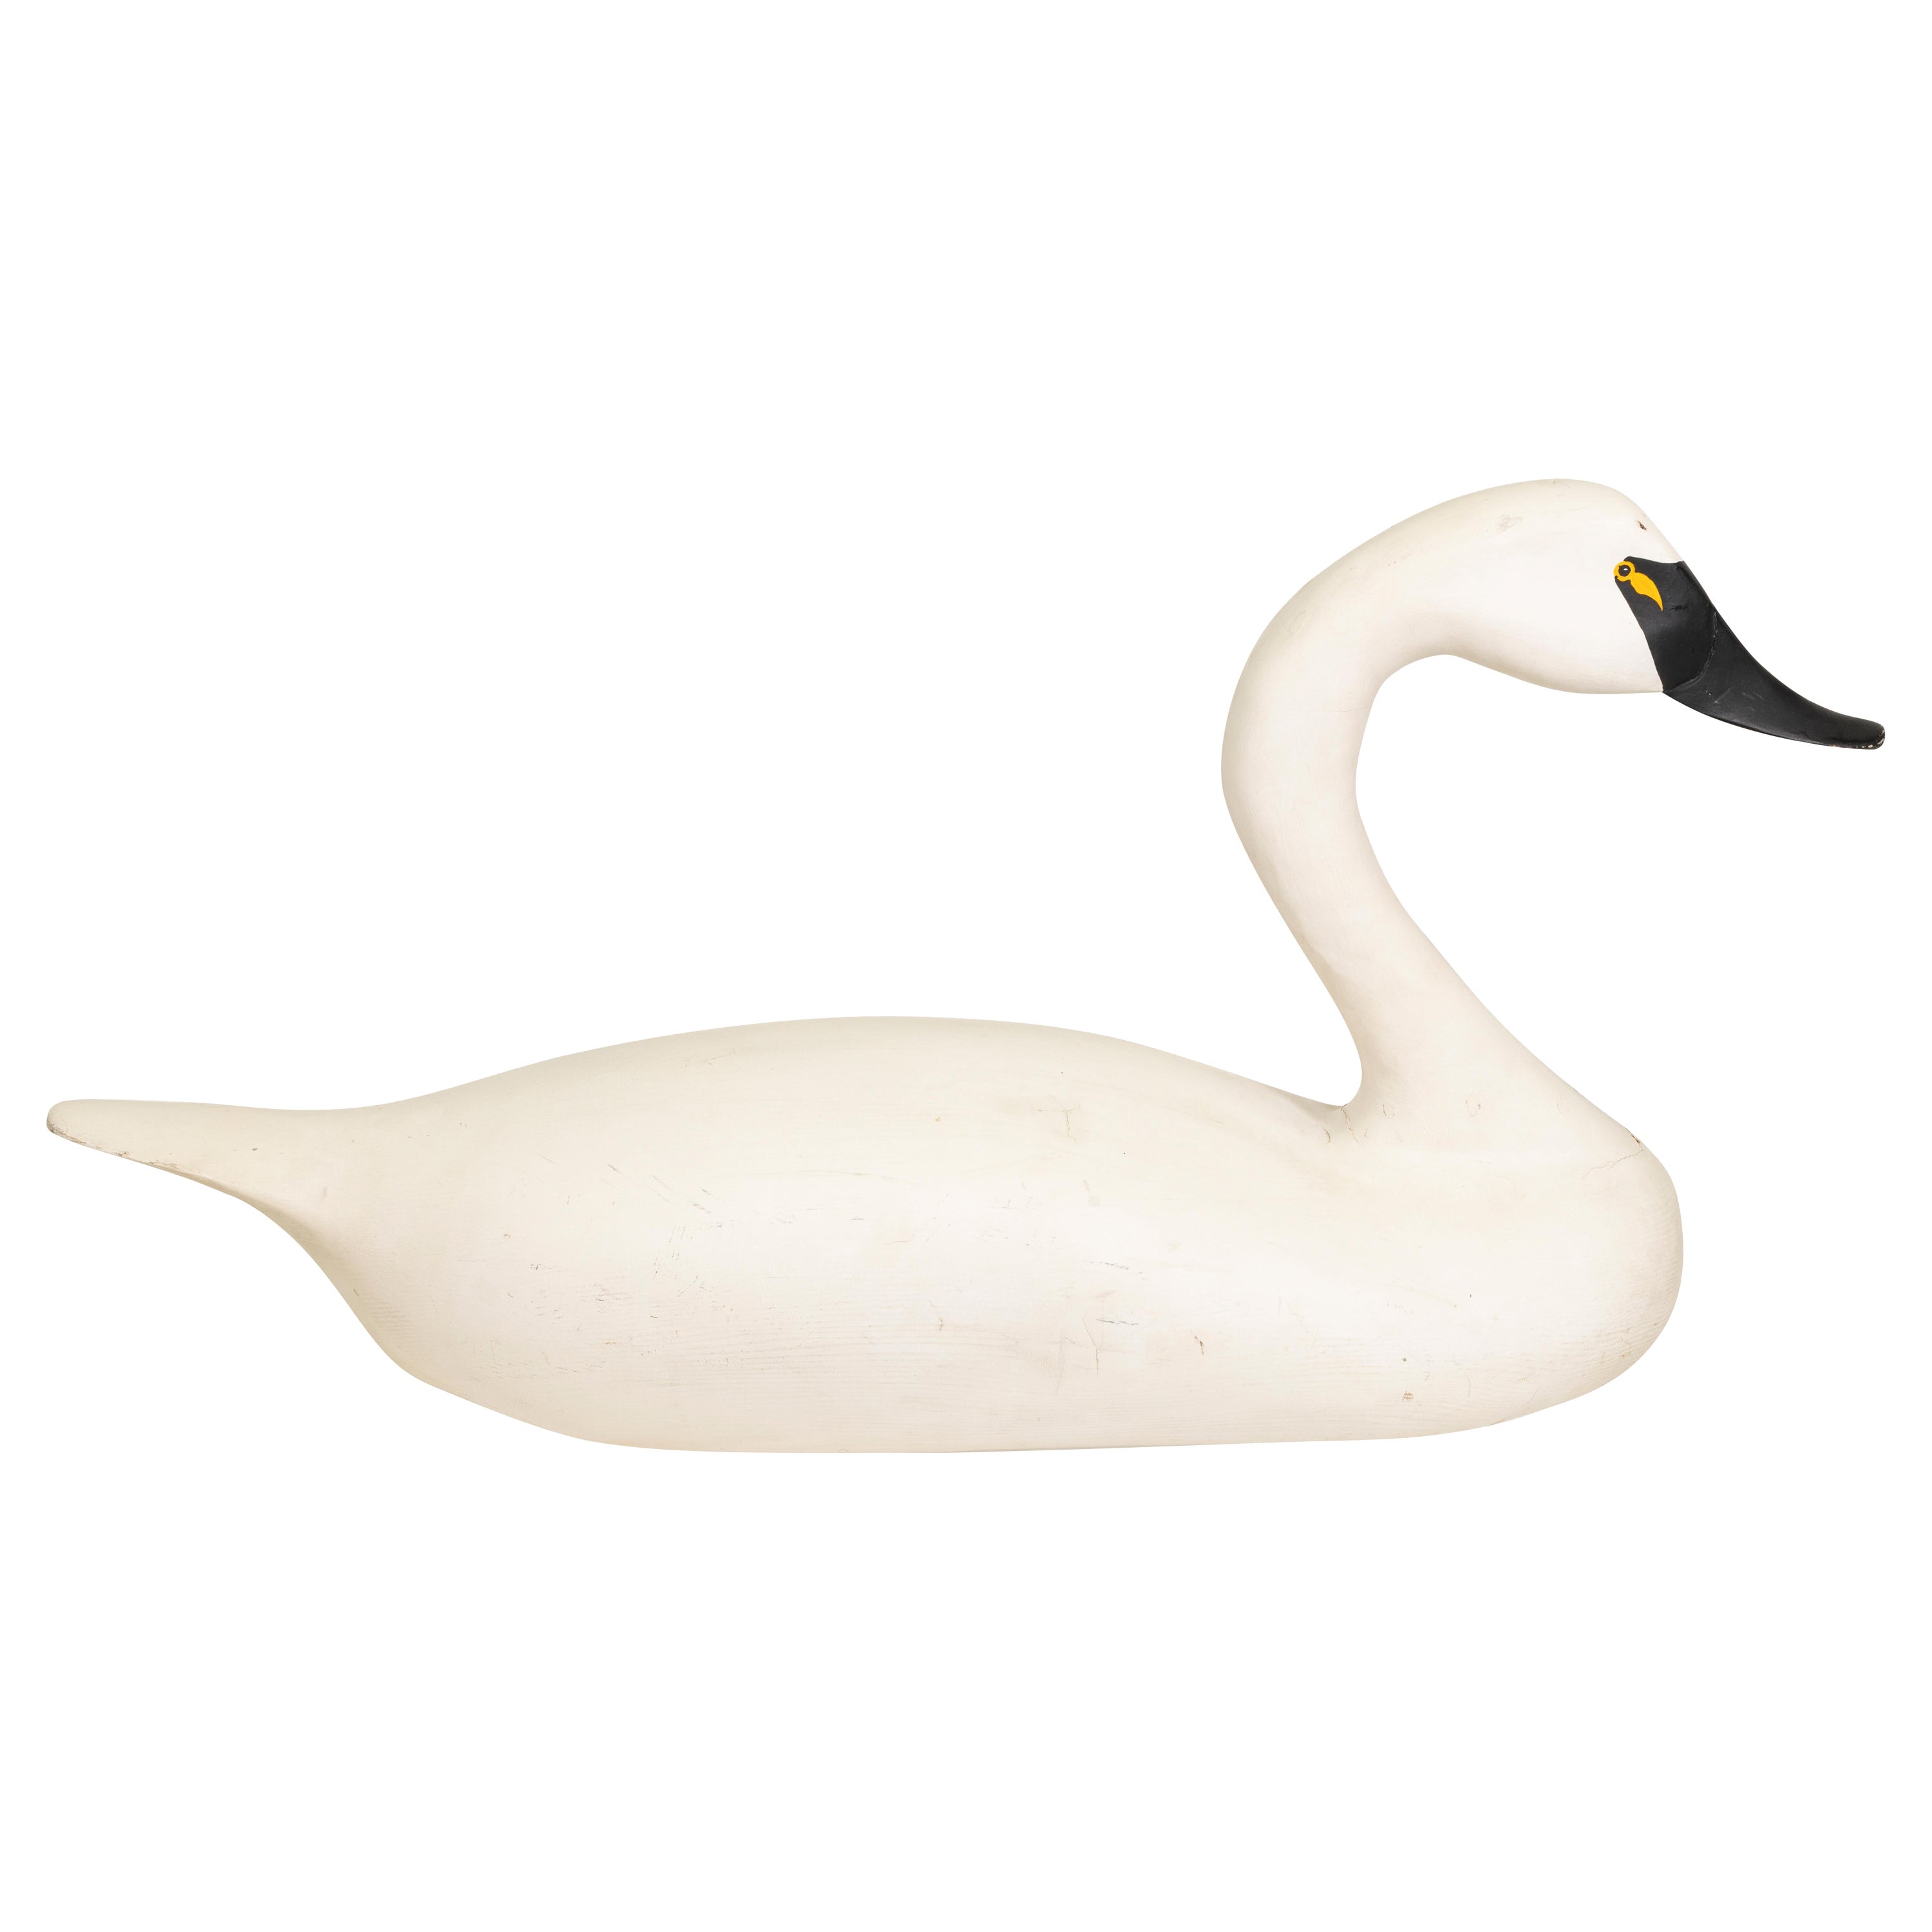 Appelant grandeur nature en forme de Swan par Jim Pierce